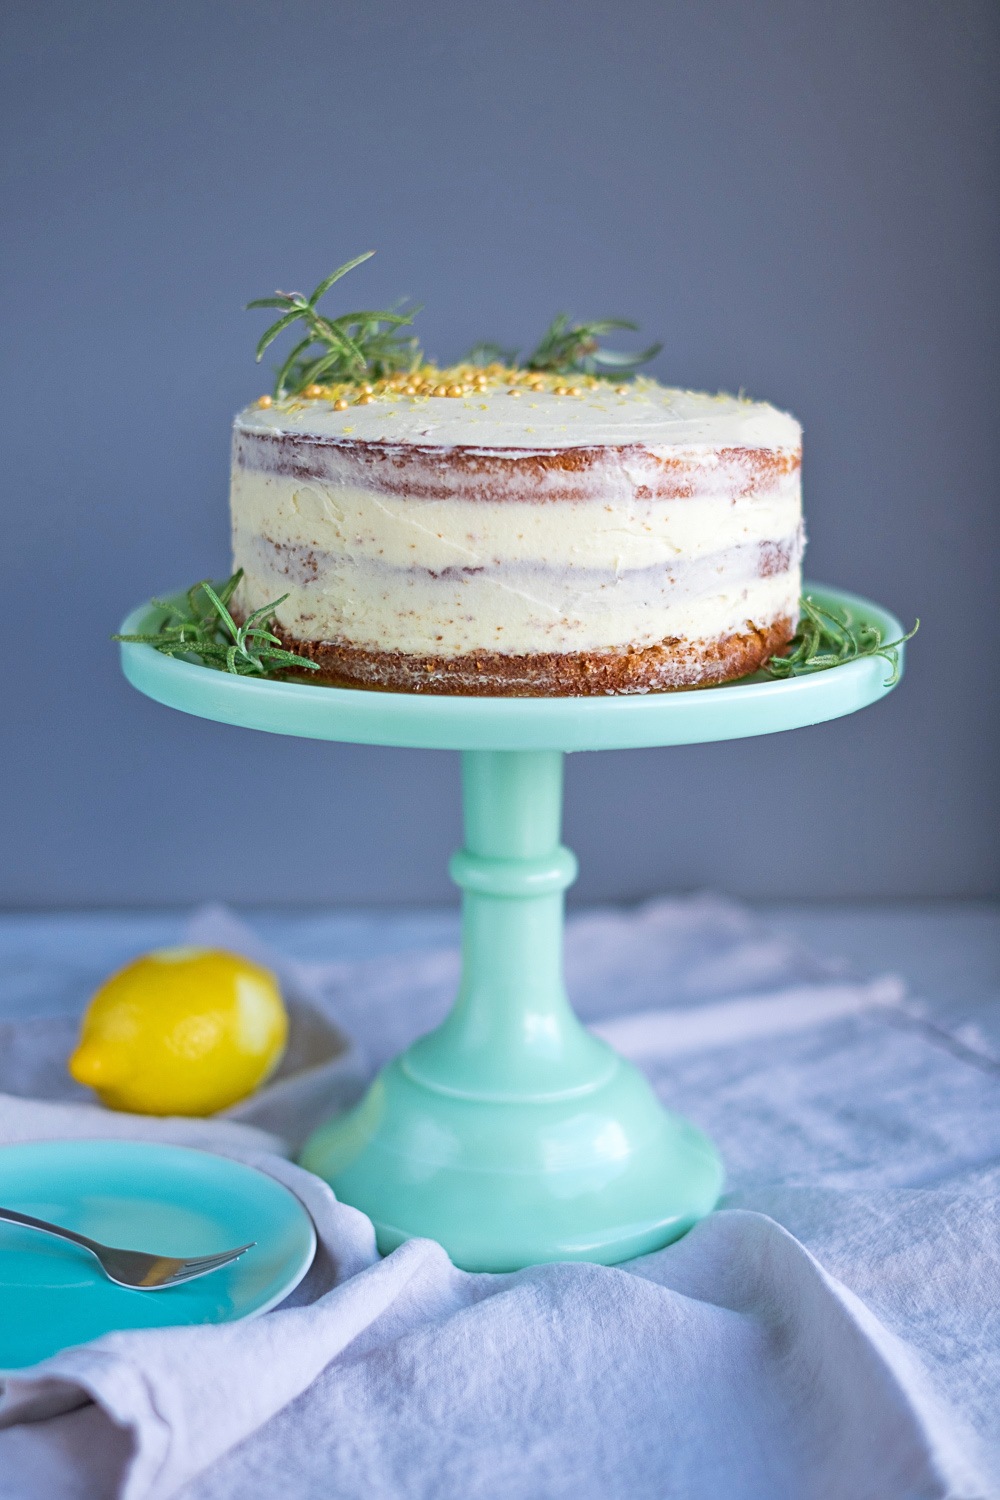 Lemon Cake with Rosemary Buttercream Frosting.